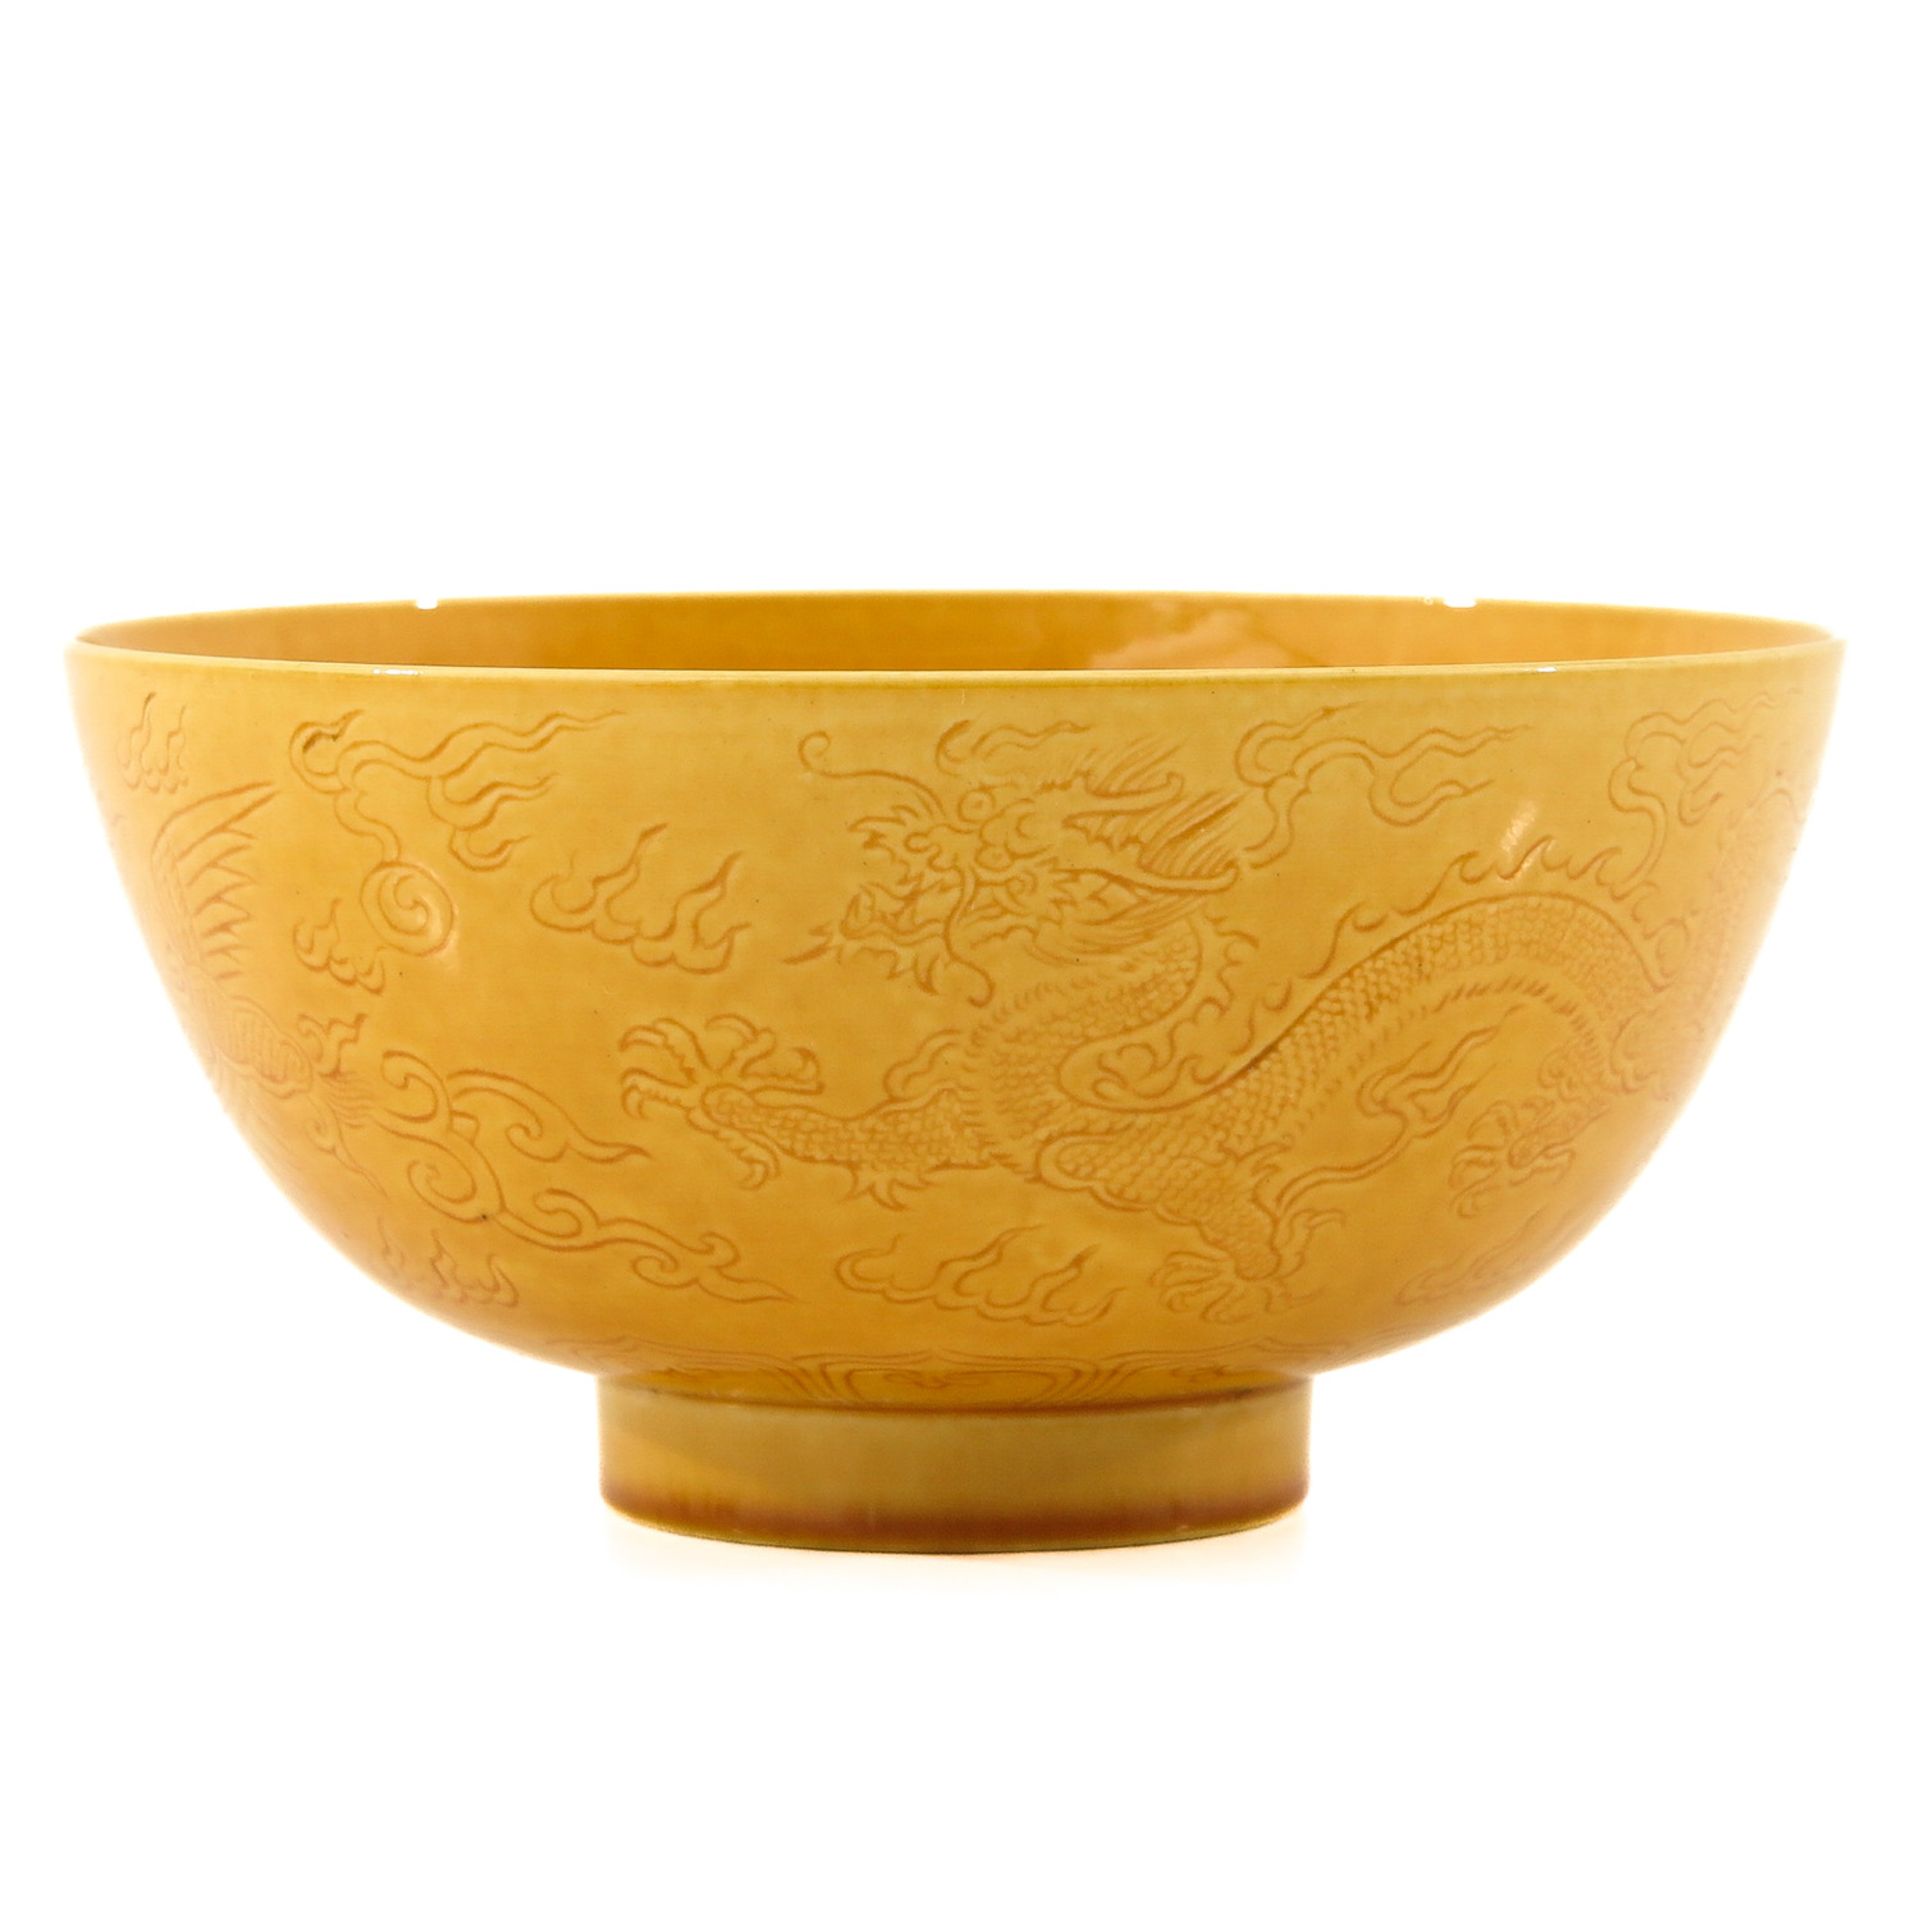 A Yellow Glaze Bowl